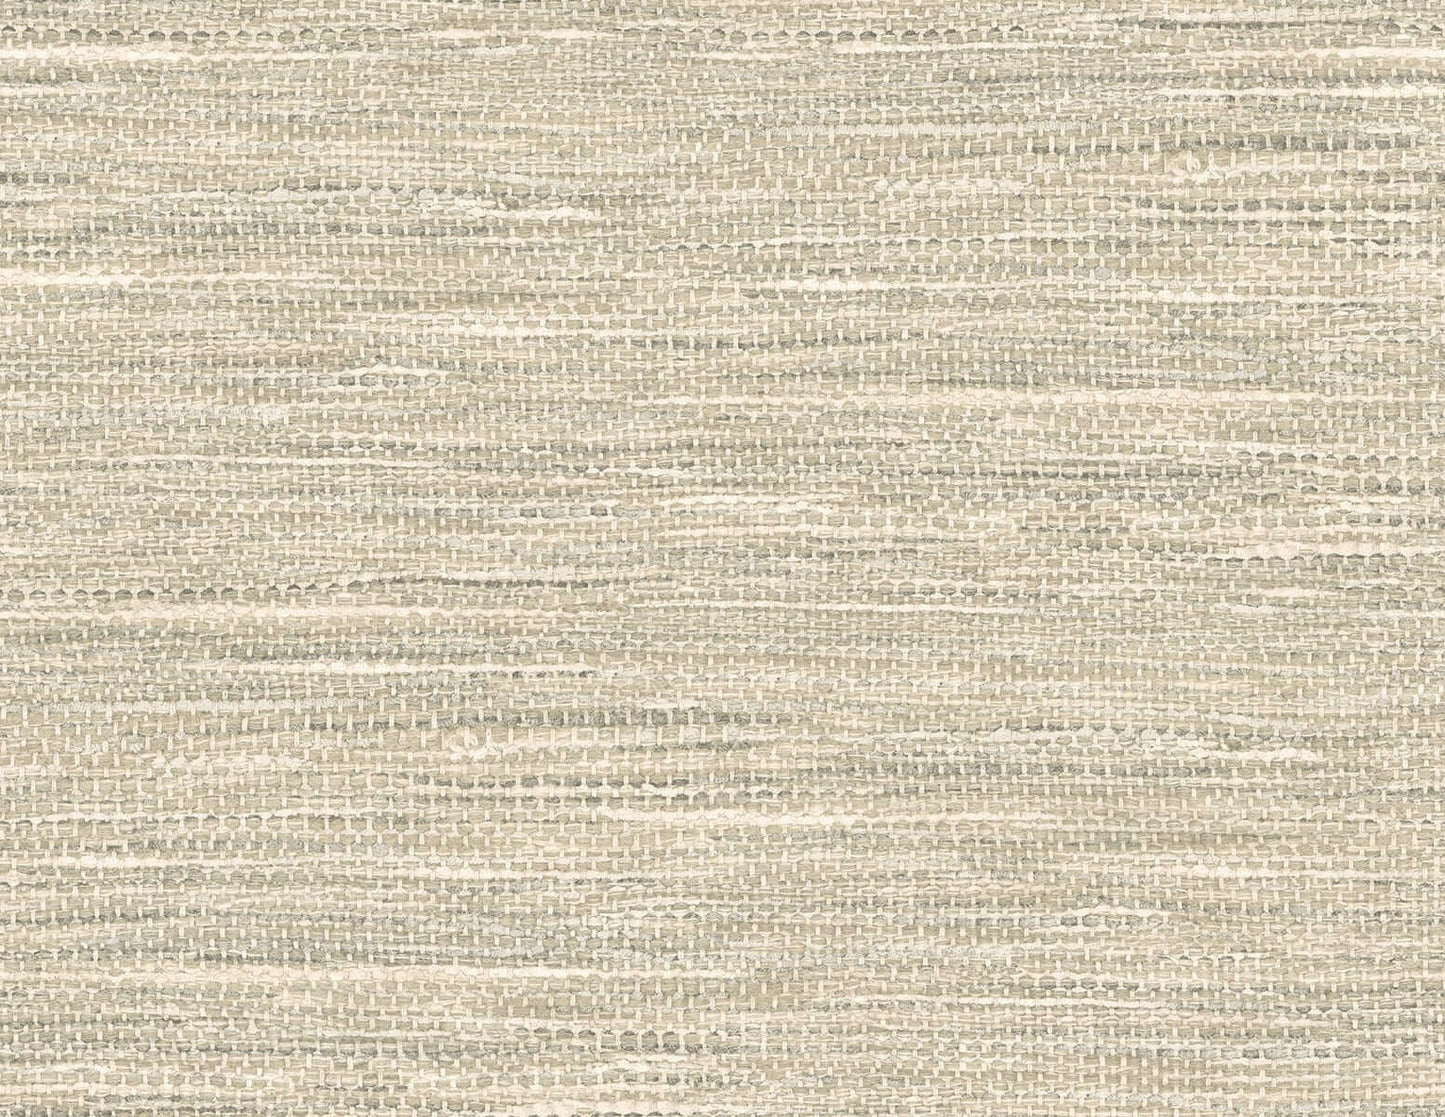 Seabrook Japandi Style Rina Wallpaper - Warm Stone